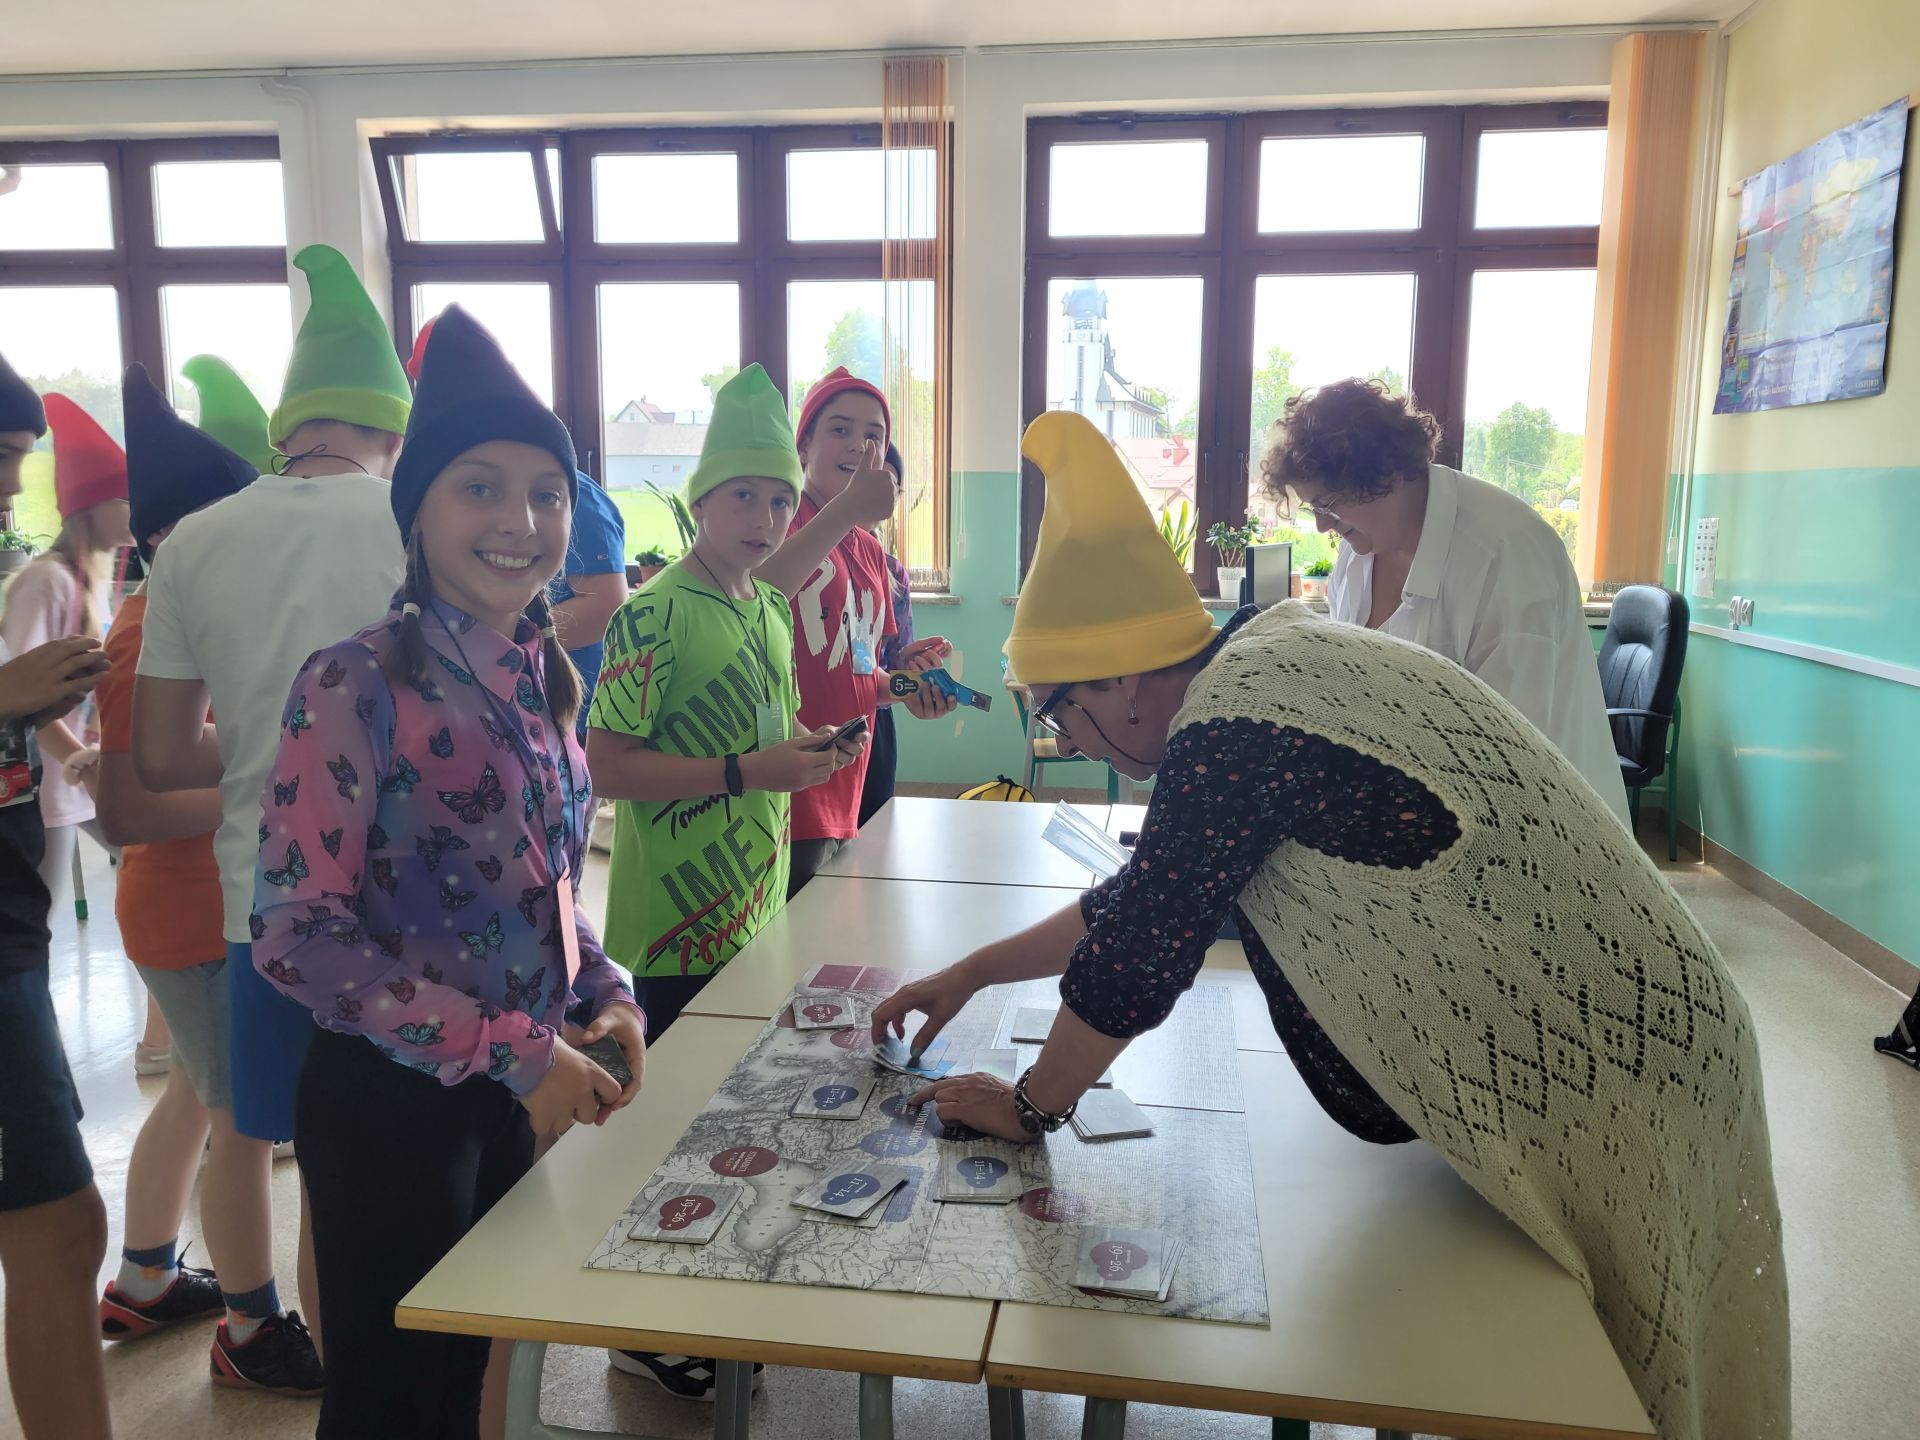 W sali lekcyjnej grupa dzieci gra w grę planszową ubrana w kolorowe, spiczaste czapeczki